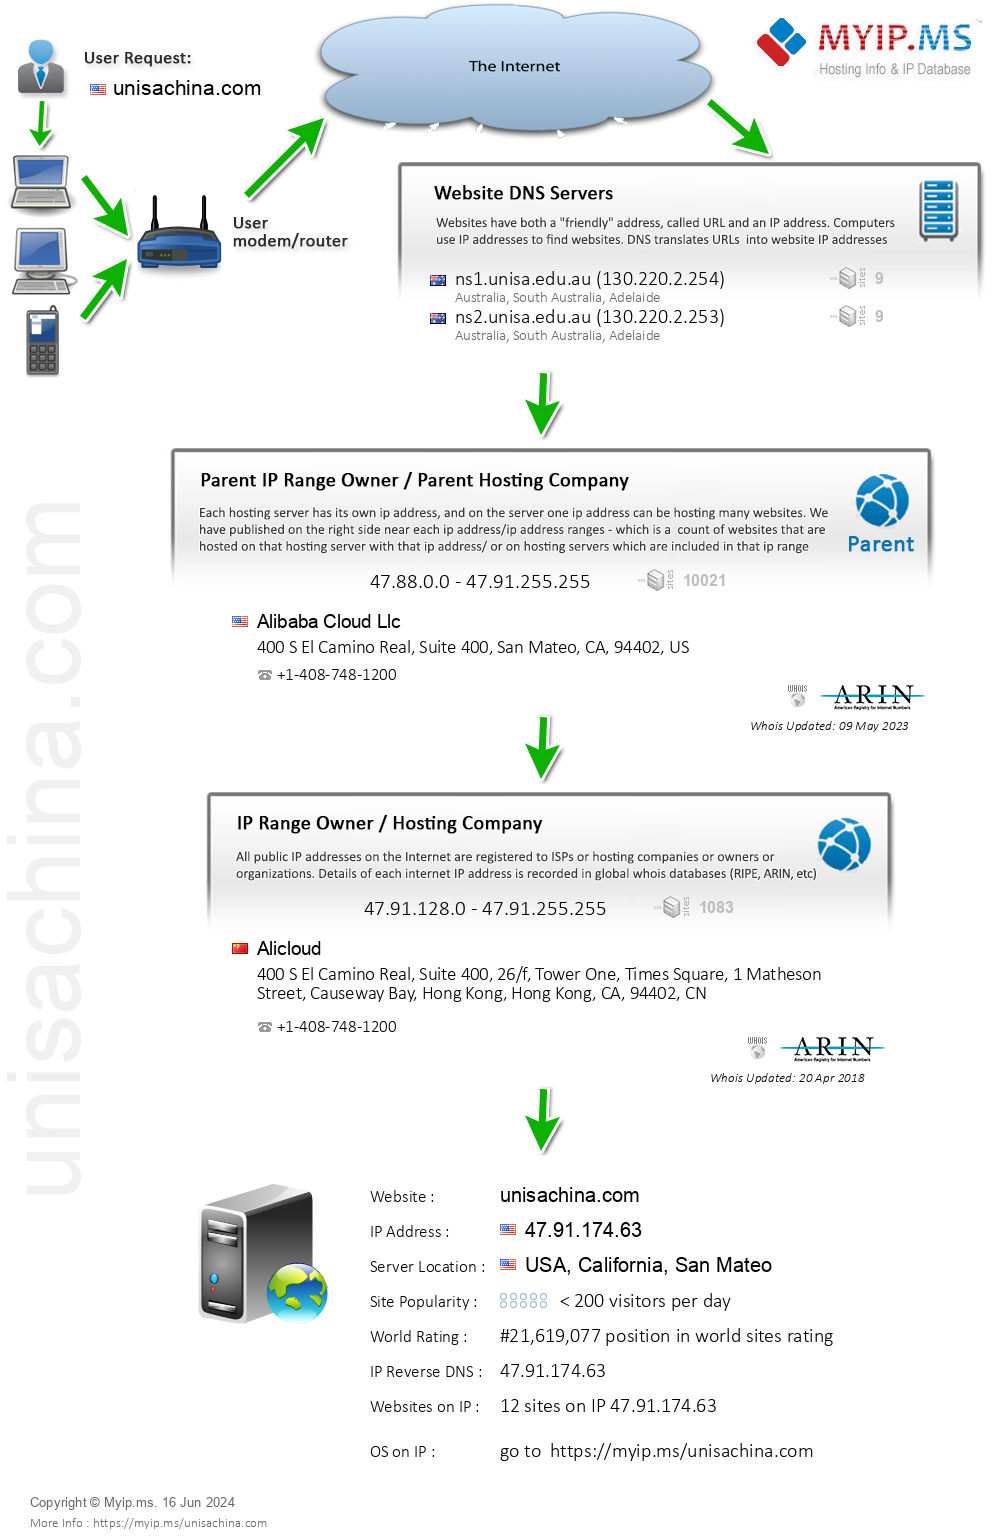 Unisachina.com - Website Hosting Visual IP Diagram